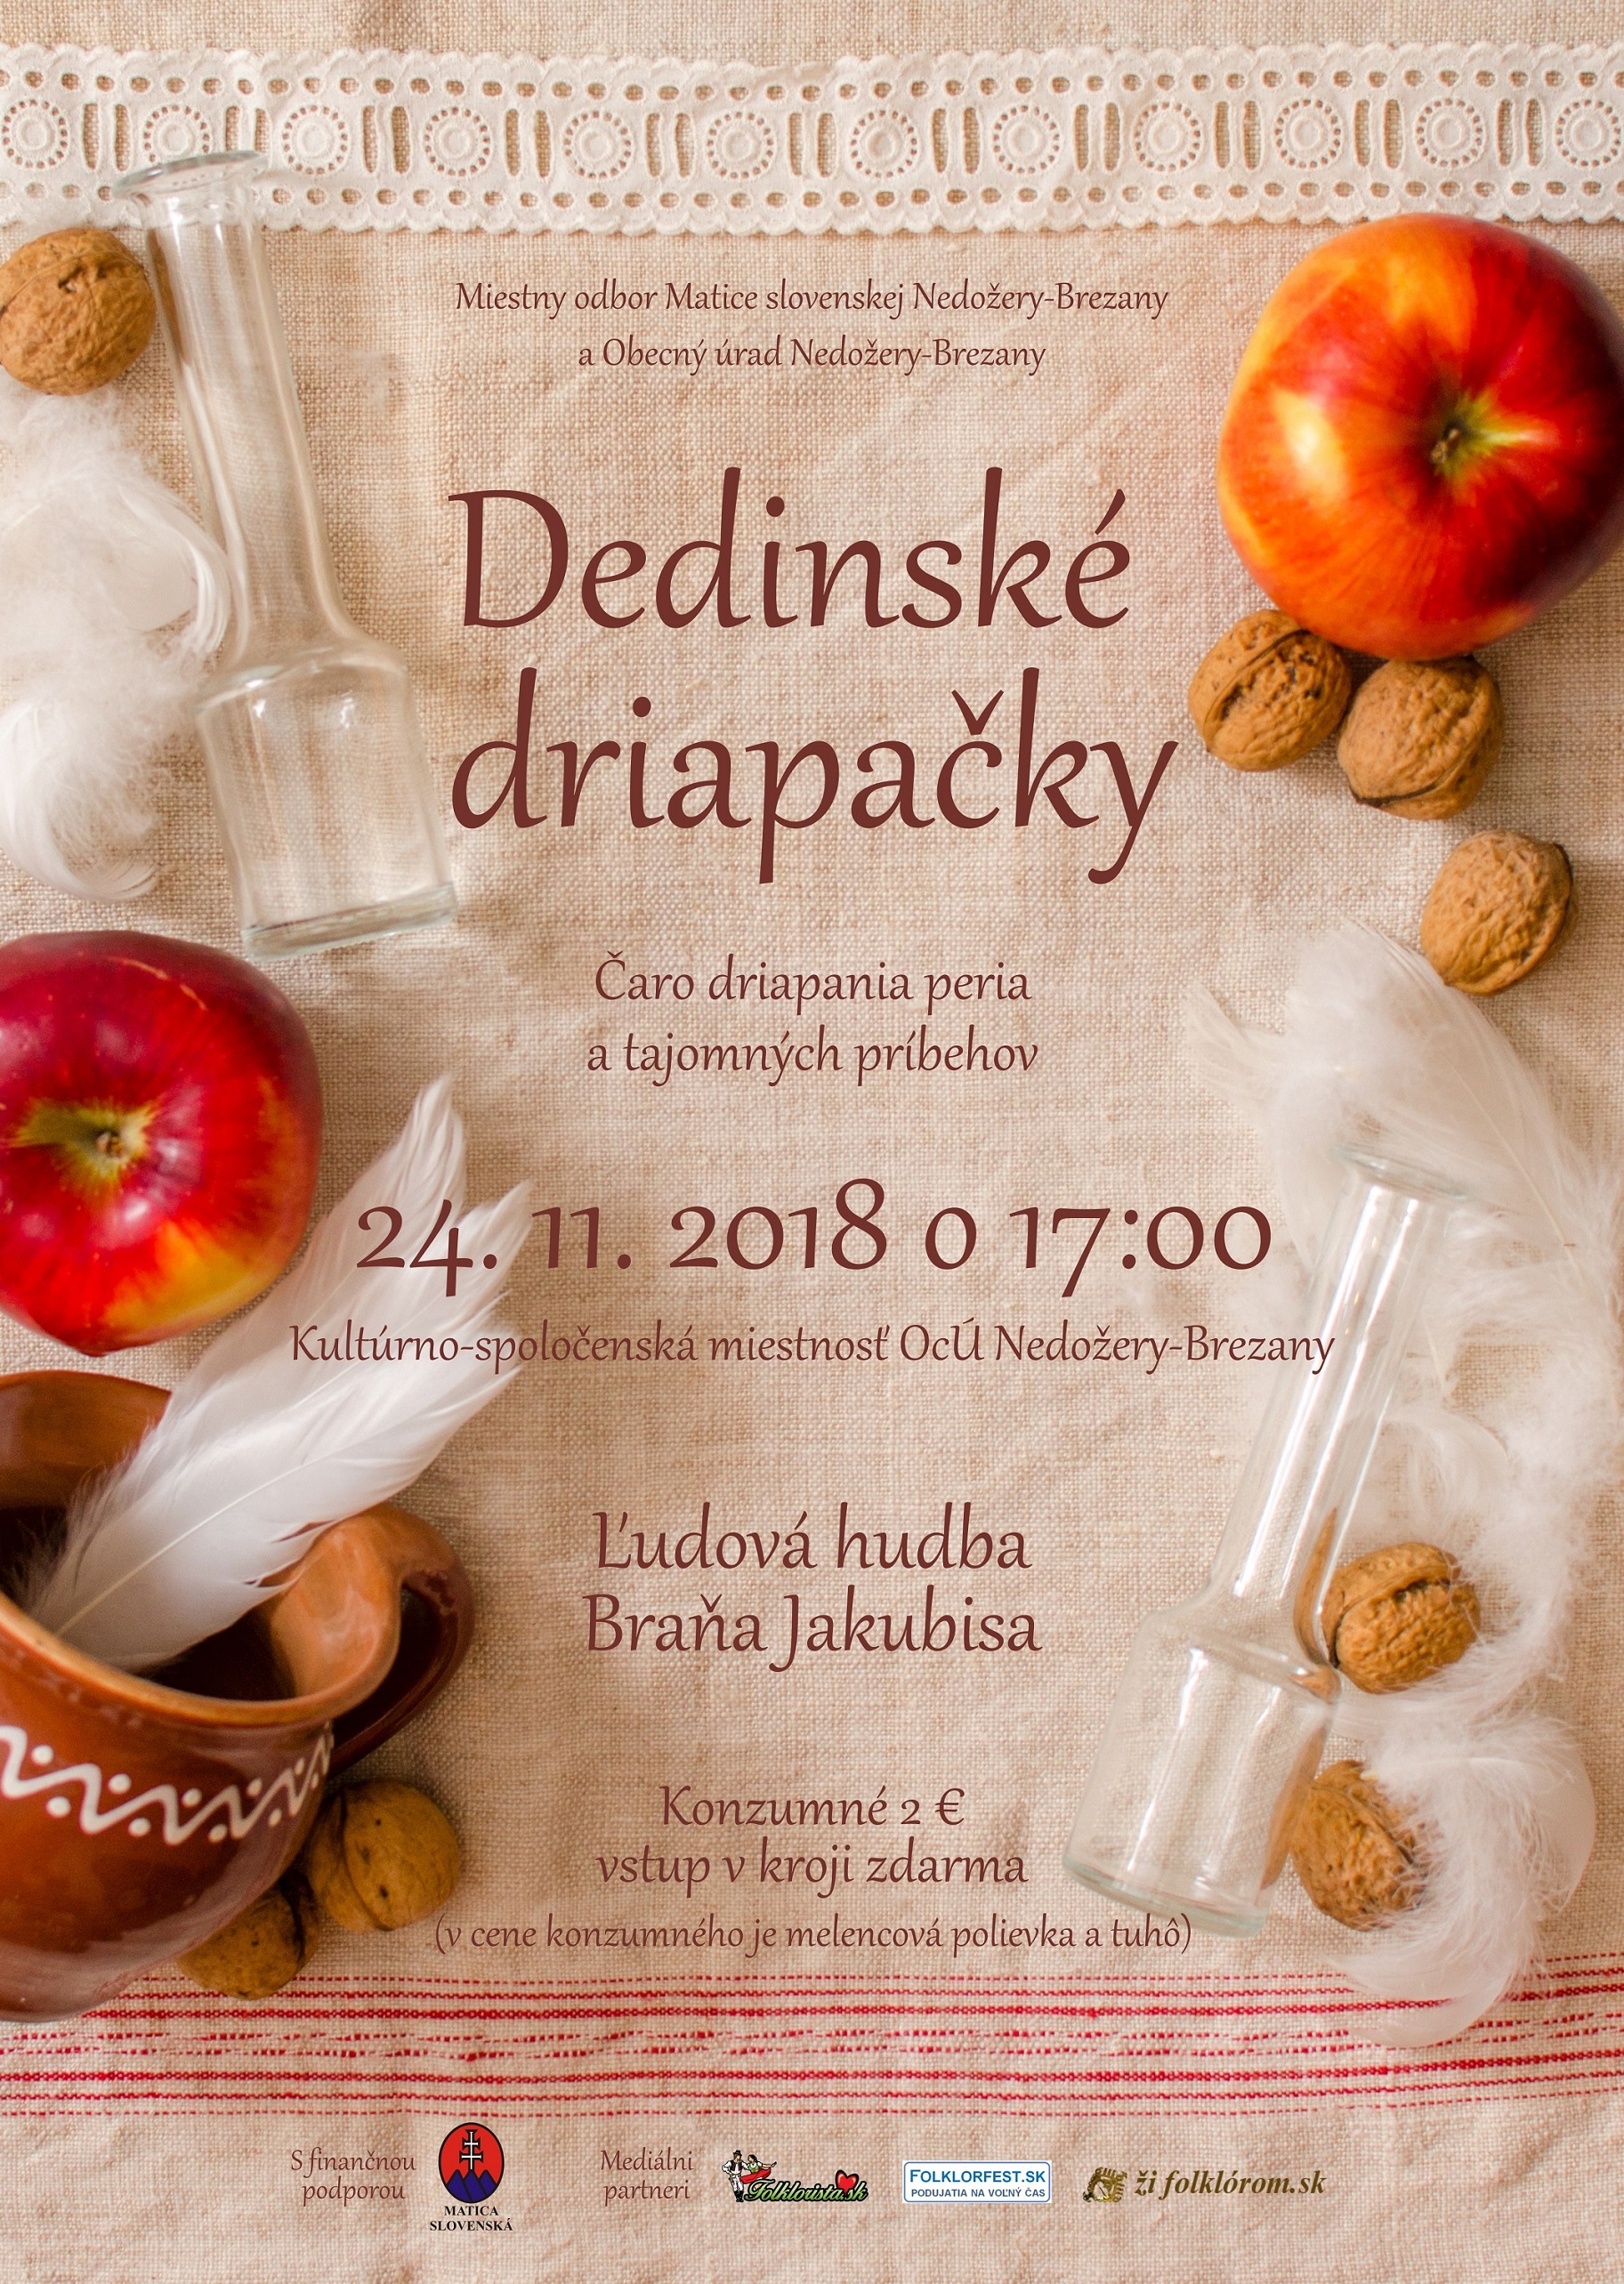 Dedinsk driapaky 2018 Nedoery-Brezany - 5. ronk